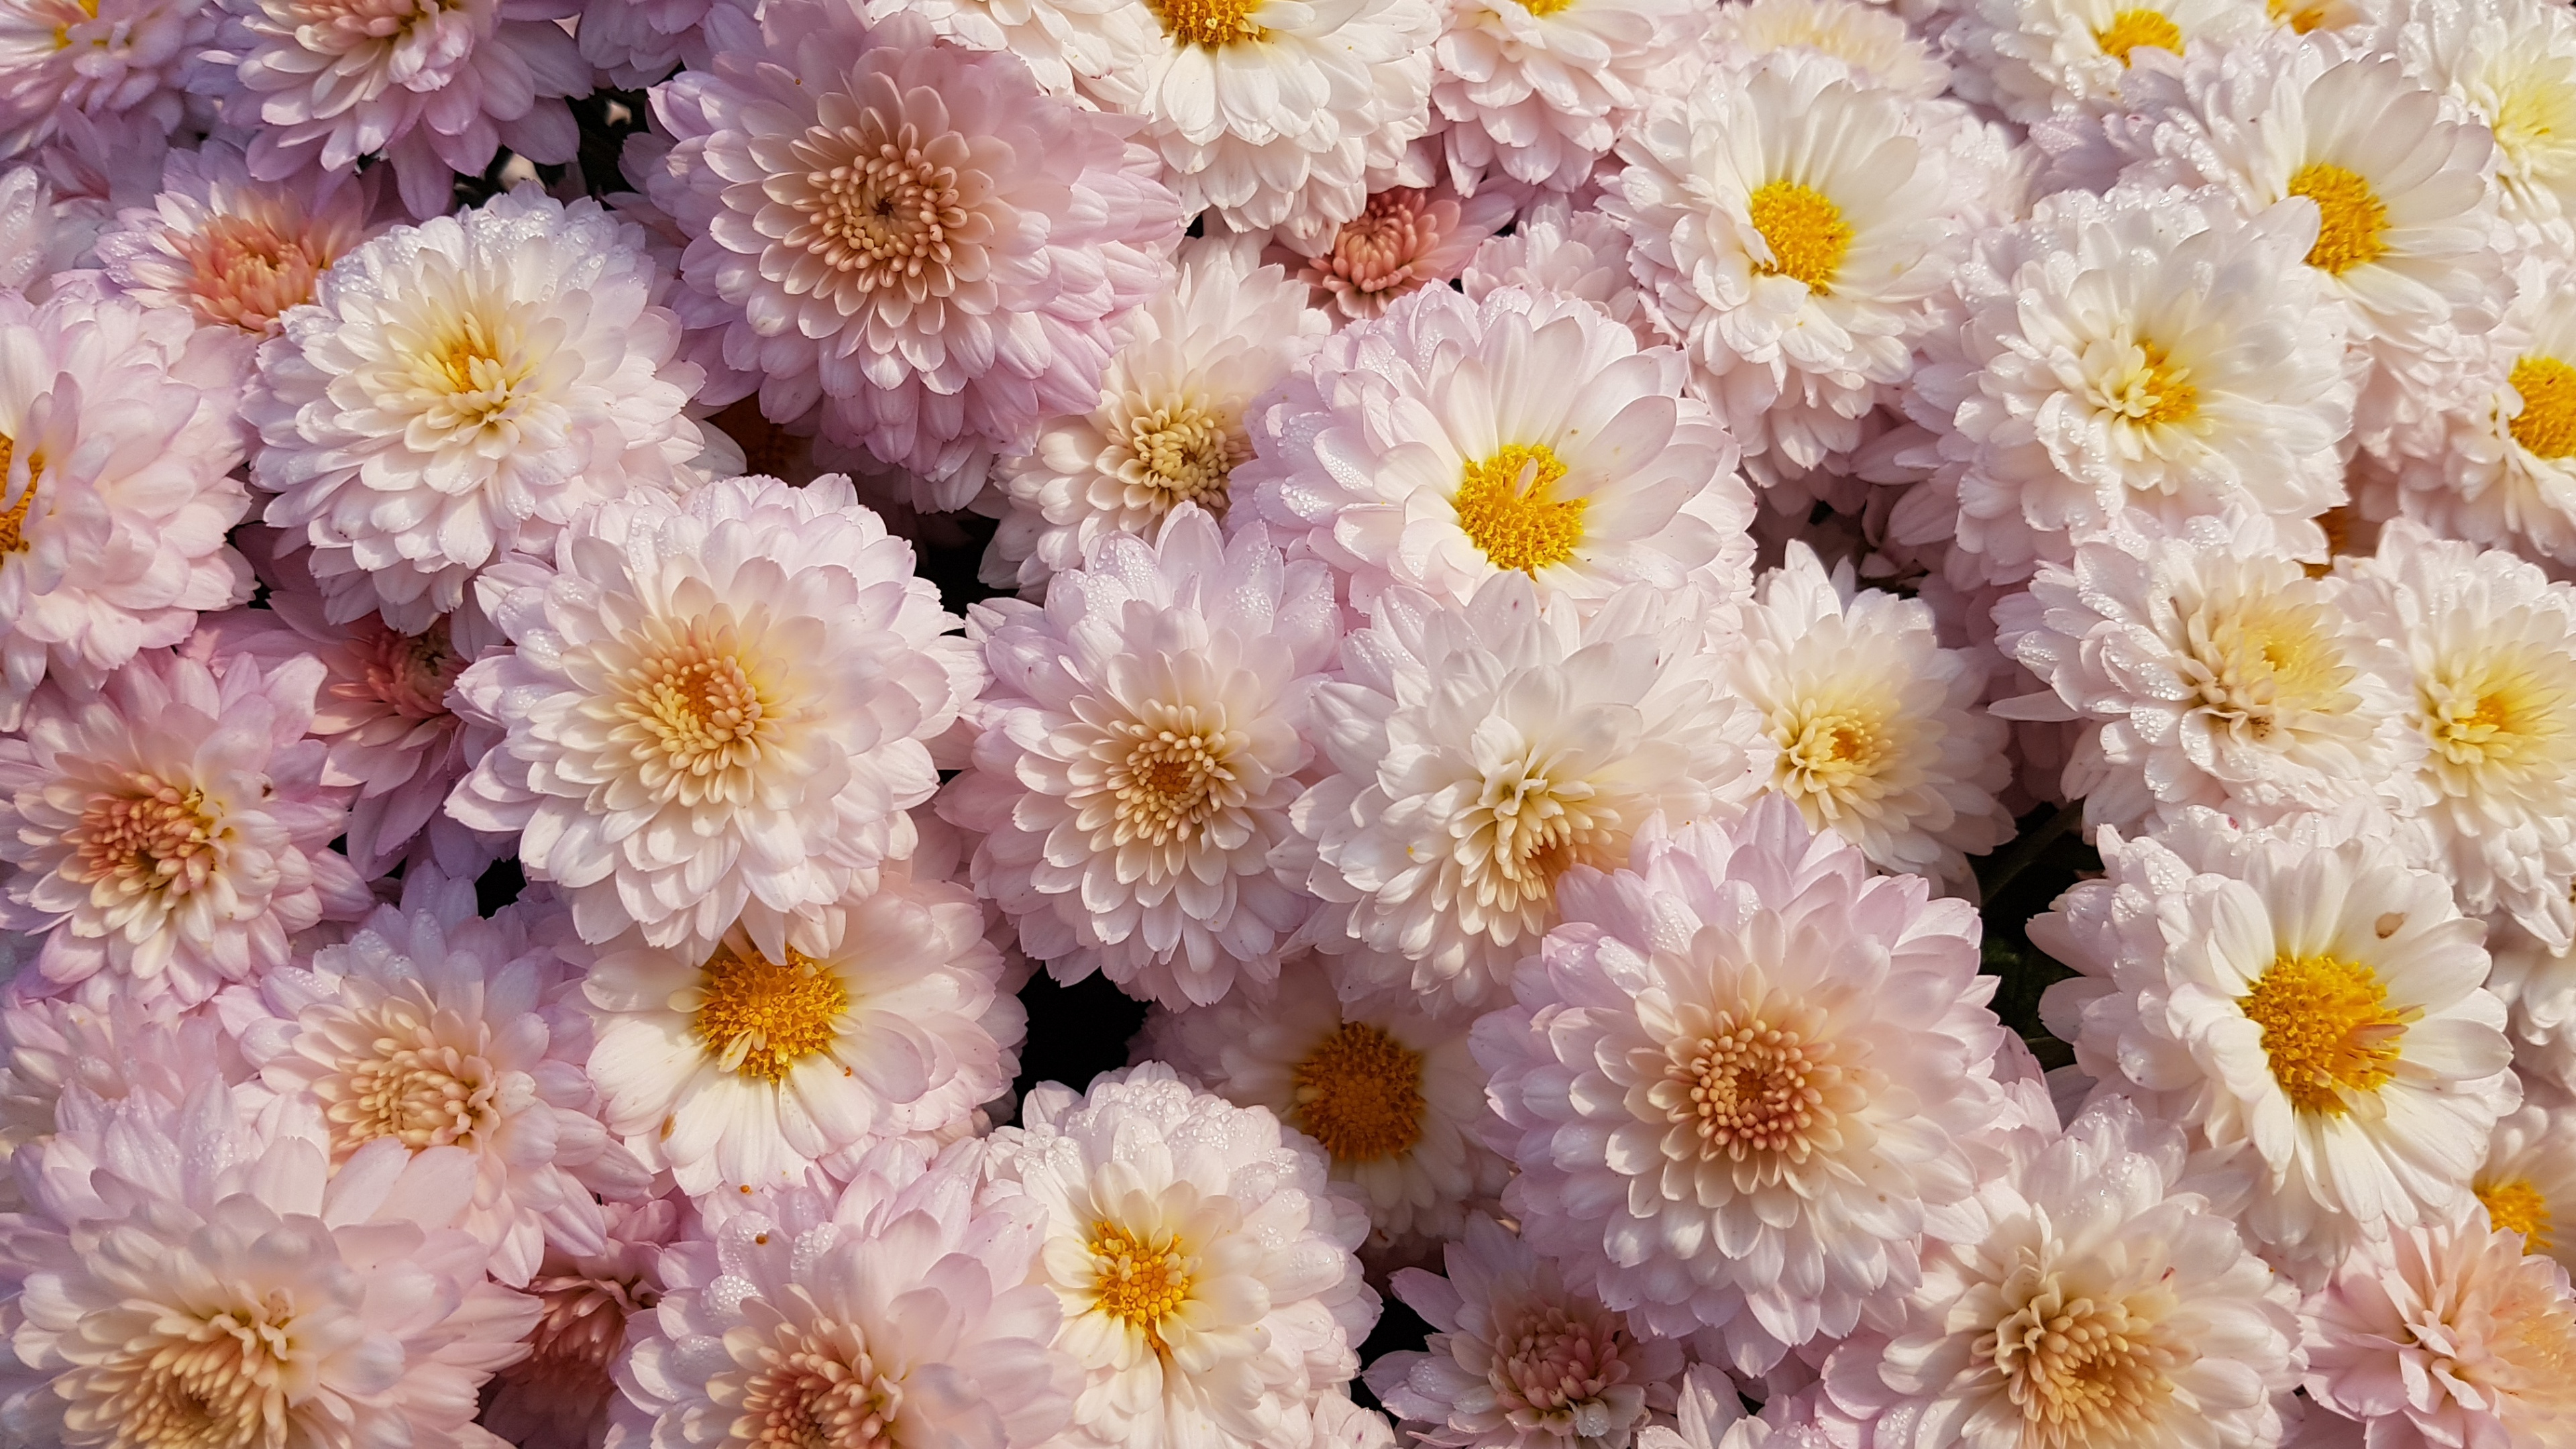 Flores Blancas y Moradas en Fotografía de Cerca. Wallpaper in 3840x2160 Resolution